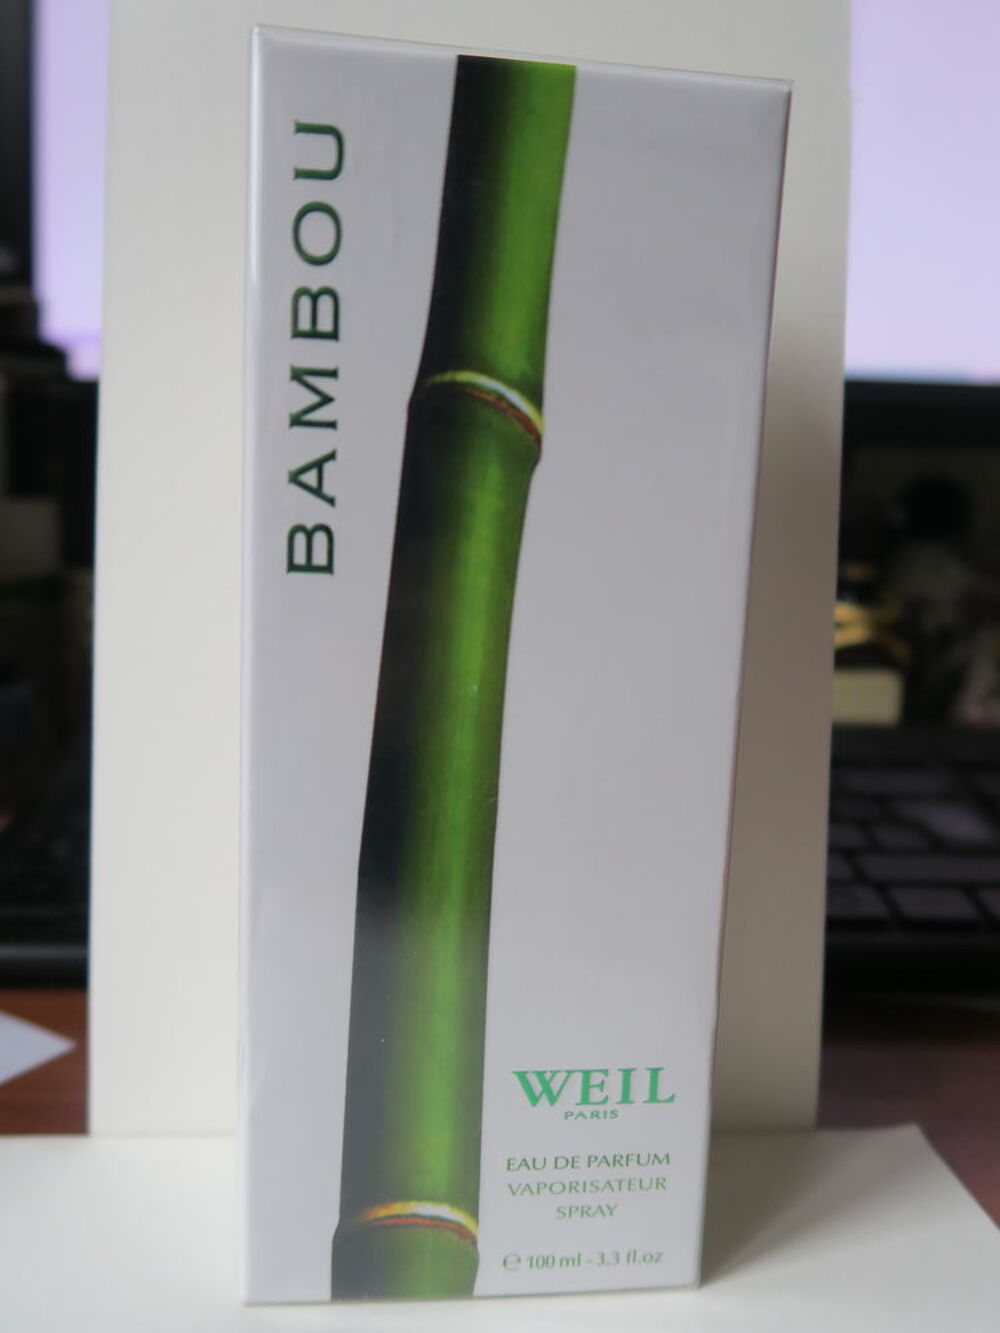 Flacon de parfum Bambou de Weil
